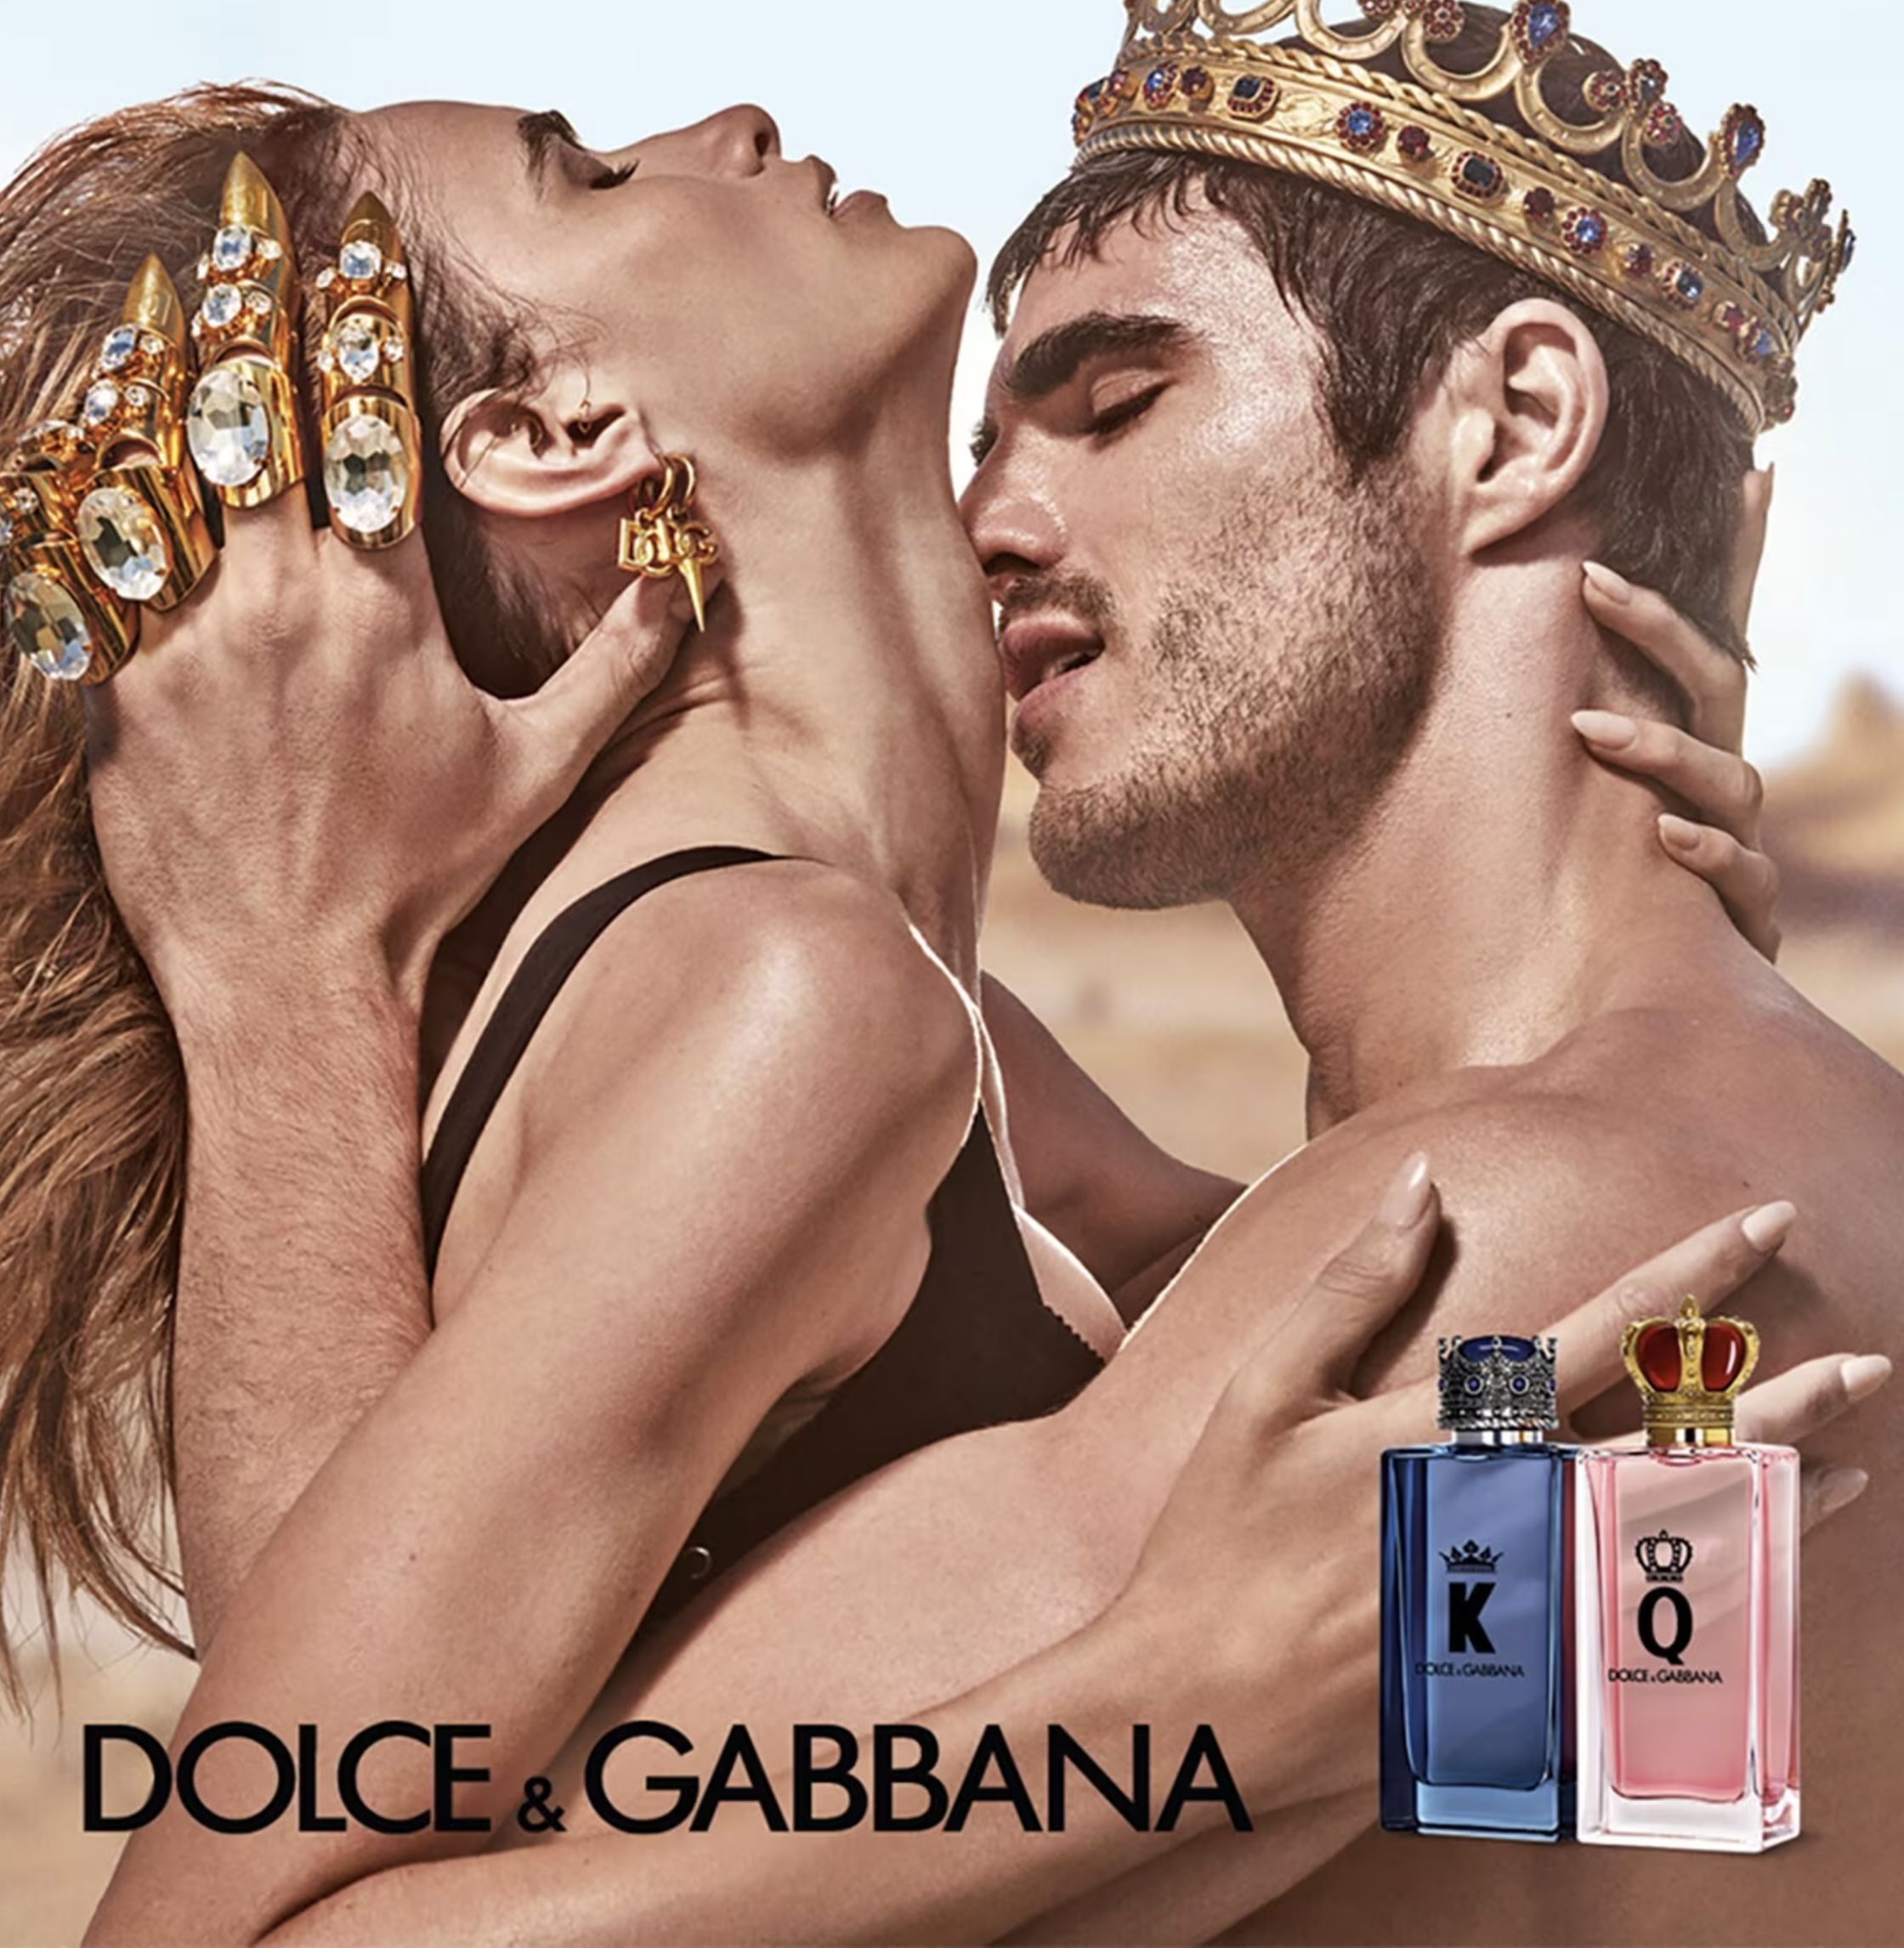 K by dolce gabbana. Q by Dolce Gabbana. Dolce & Gabbana q Perfume 2023. Dolce Gabbana King Eau de Parfum. Dolce Gabbana k by d g.